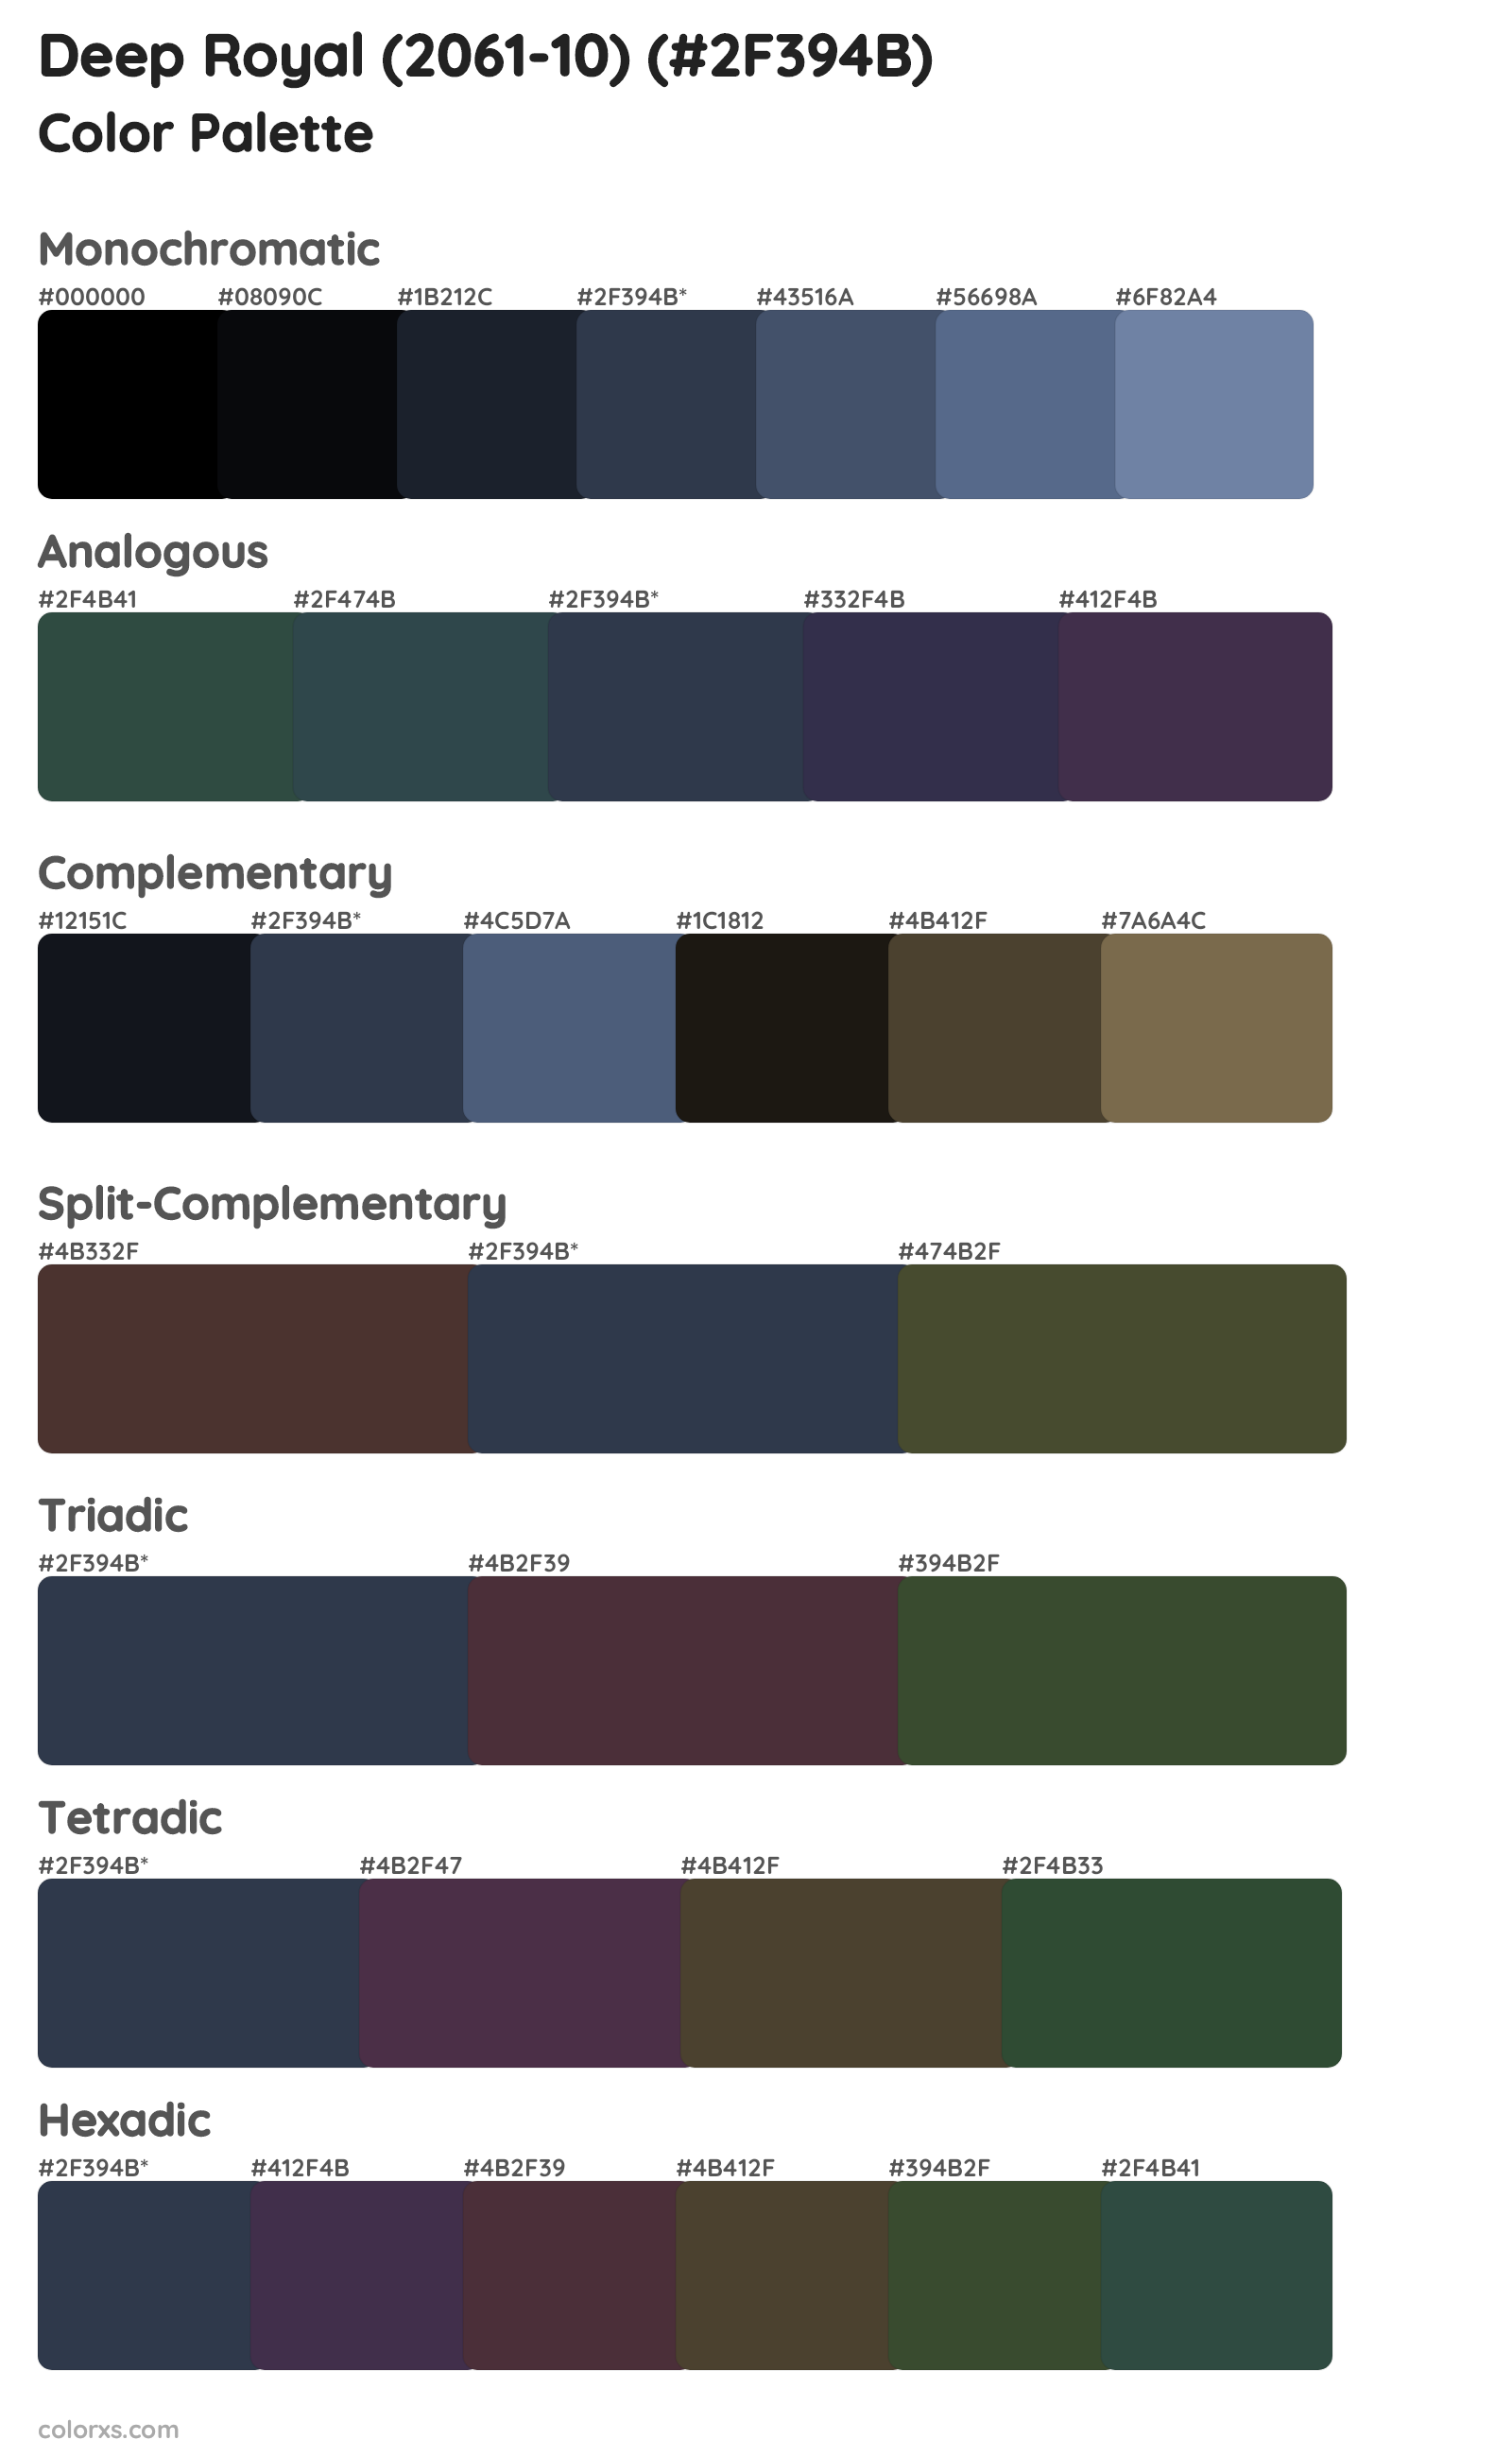 Deep Royal (2061-10) Color Scheme Palettes